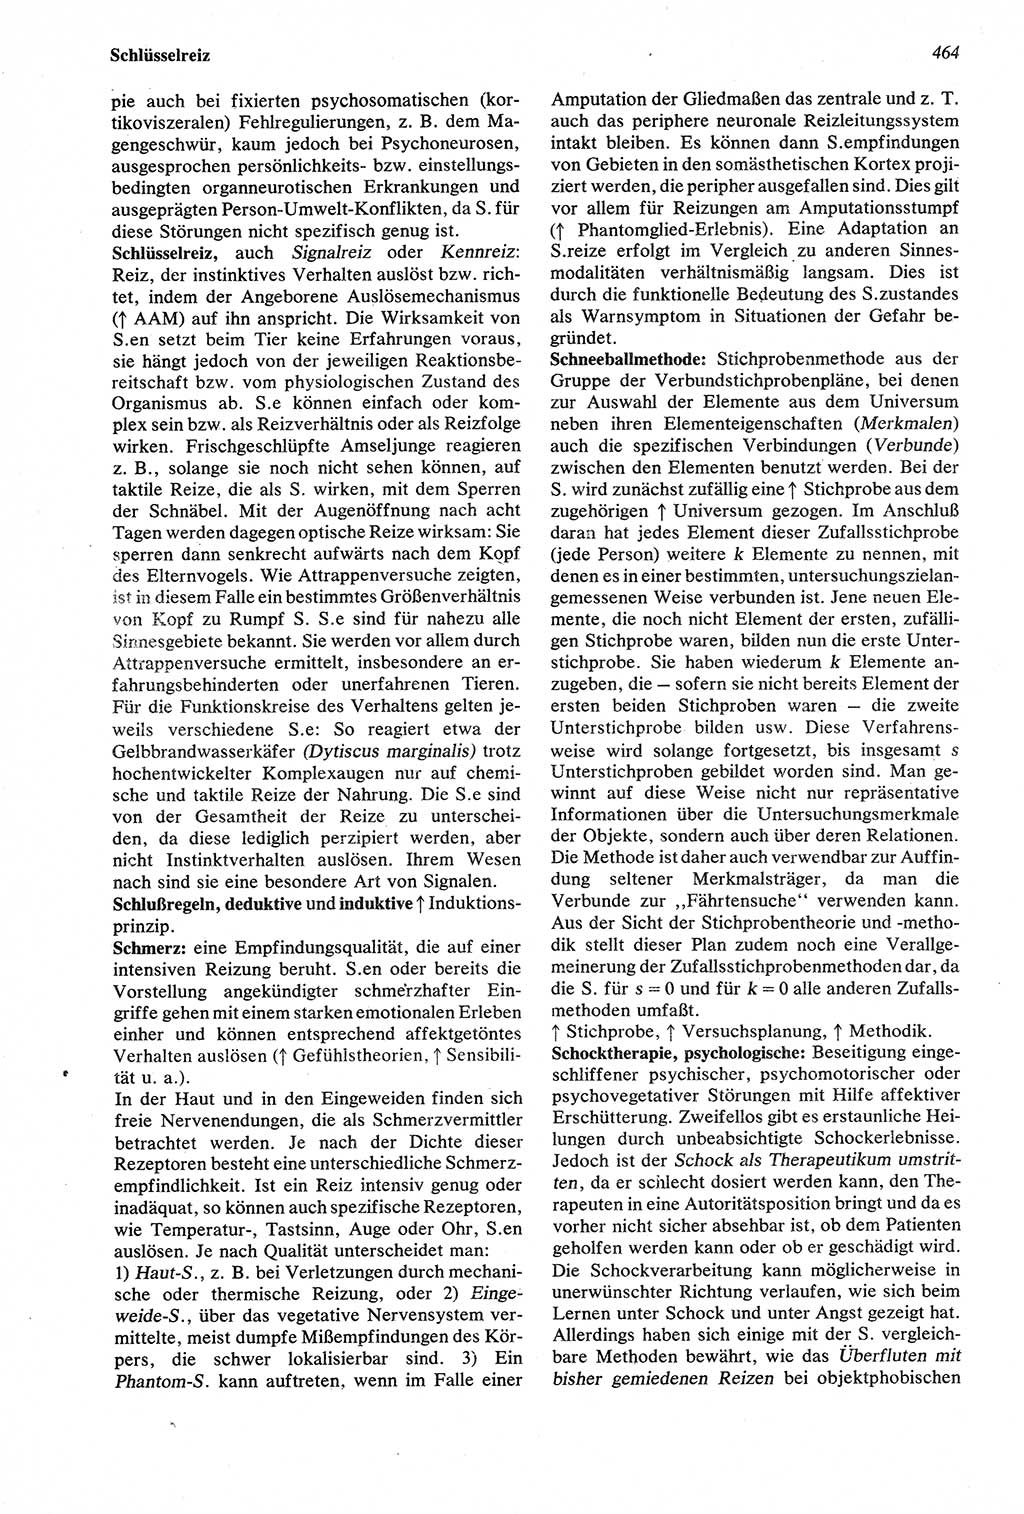 Wörterbuch der Psychologie [Deutsche Demokratische Republik (DDR)] 1976, Seite 464 (Wb. Psych. DDR 1976, S. 464)